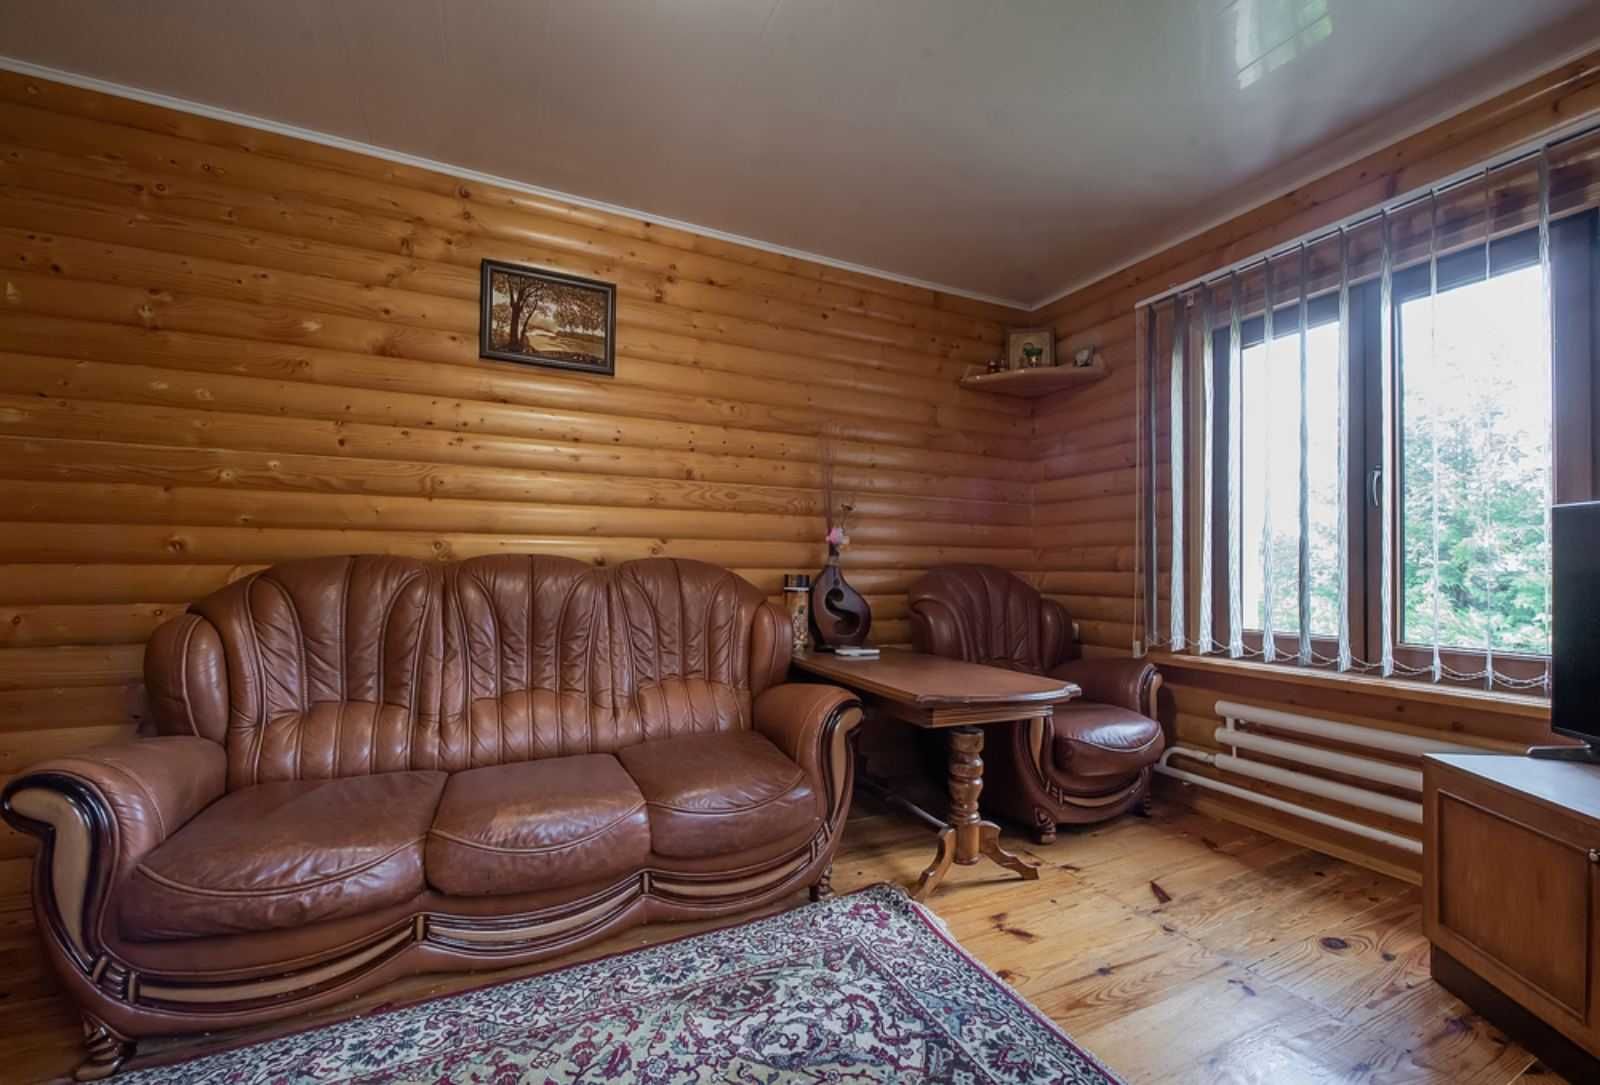 Продаж затишного будинку в СТ "Лісова Поляна", Михайлівка-Рубежівка.